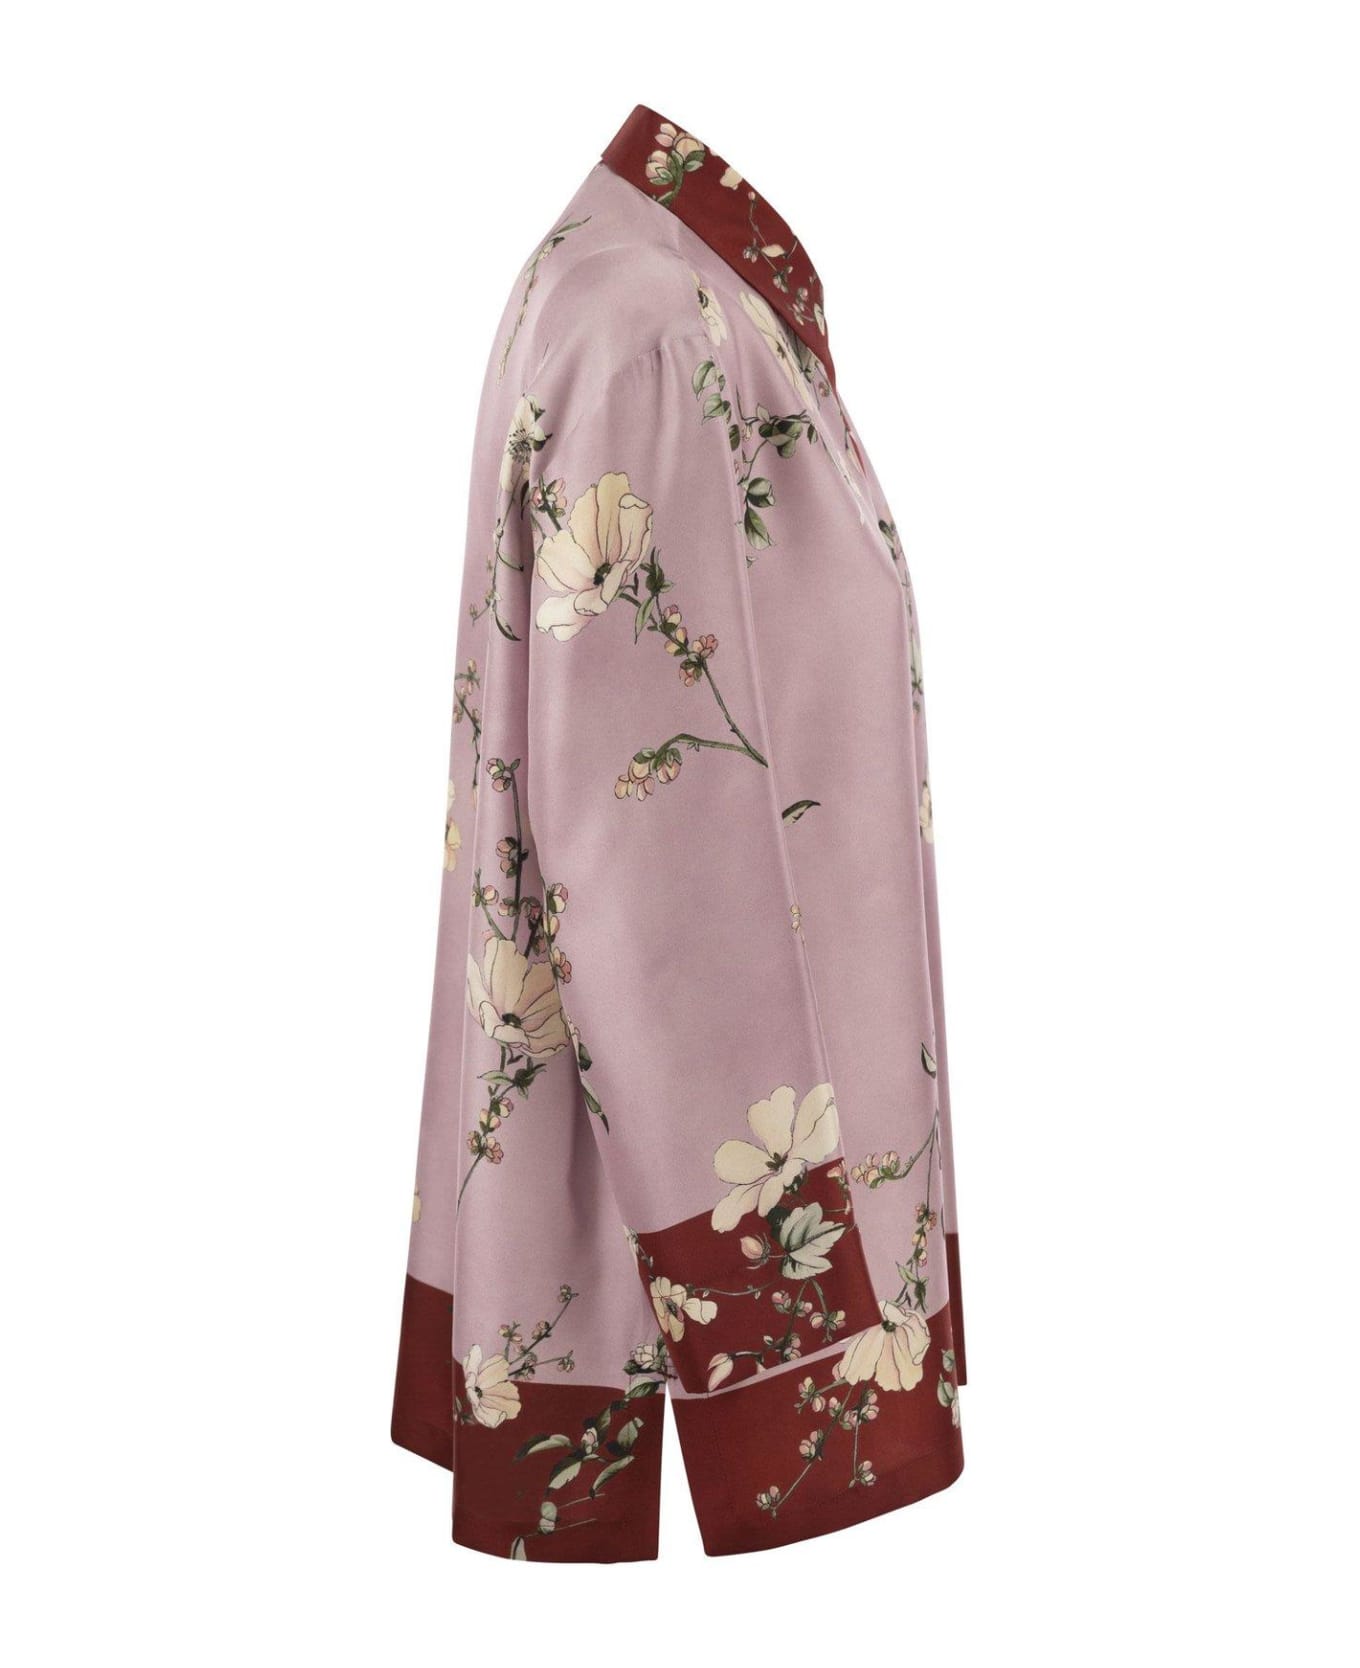 'S Max Mara Floral Printed Long-sleeved Shirt - Rosa/rosso